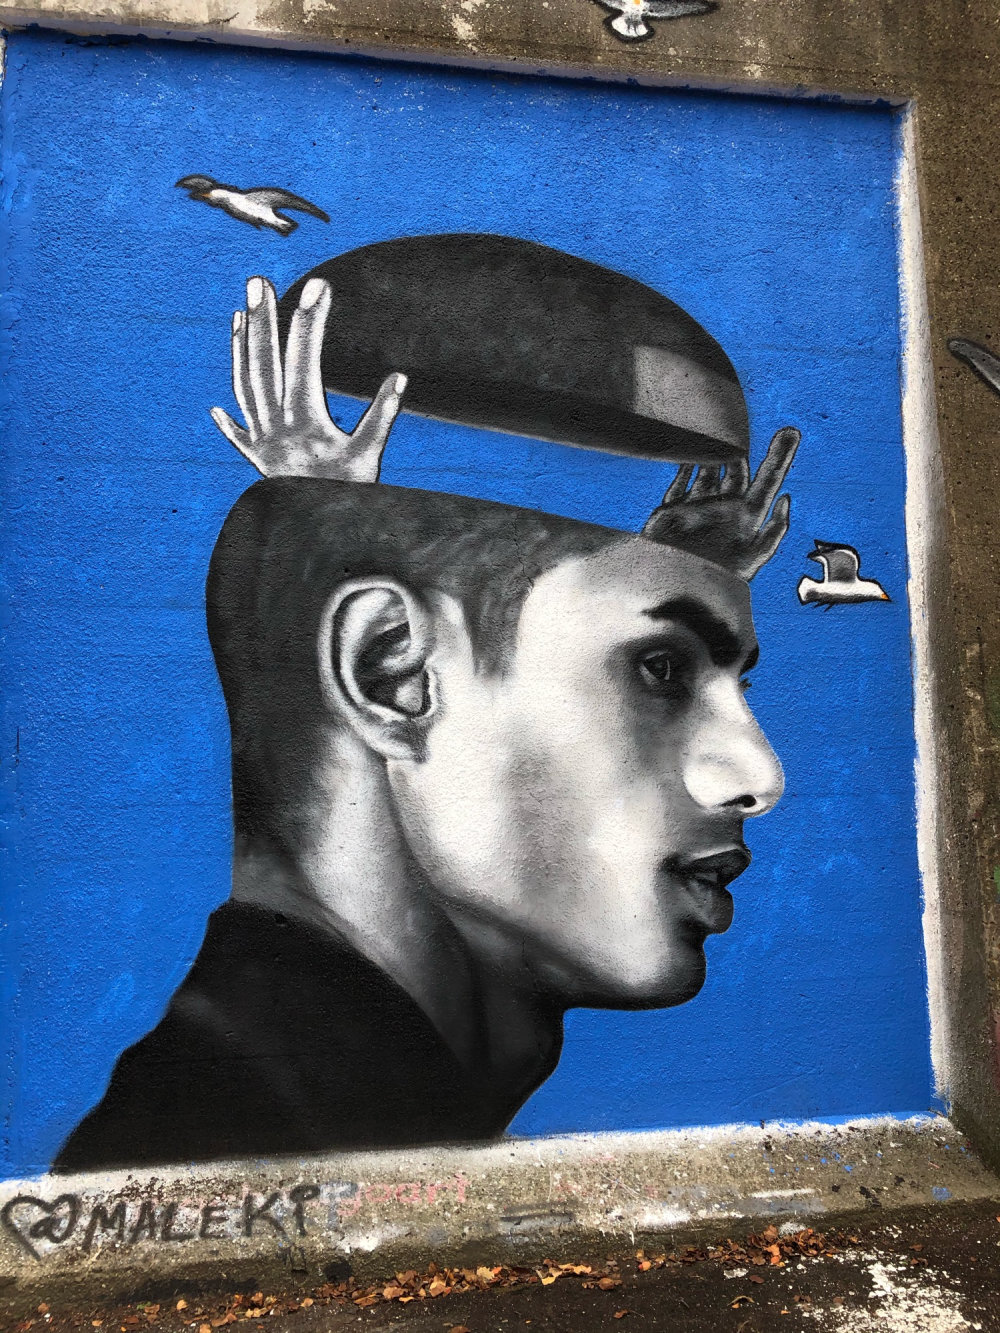 mural in Chicago by artist Maleki.